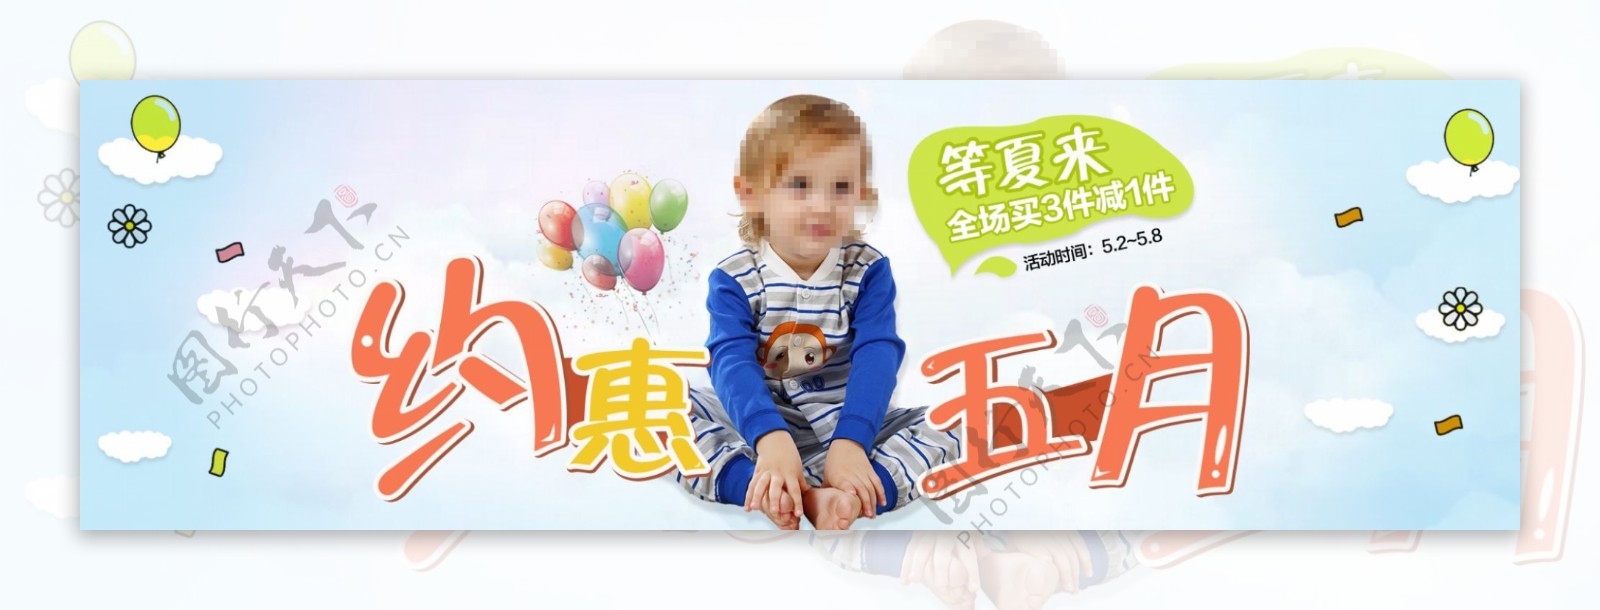 天猫9月儿童服饰首焦图海报